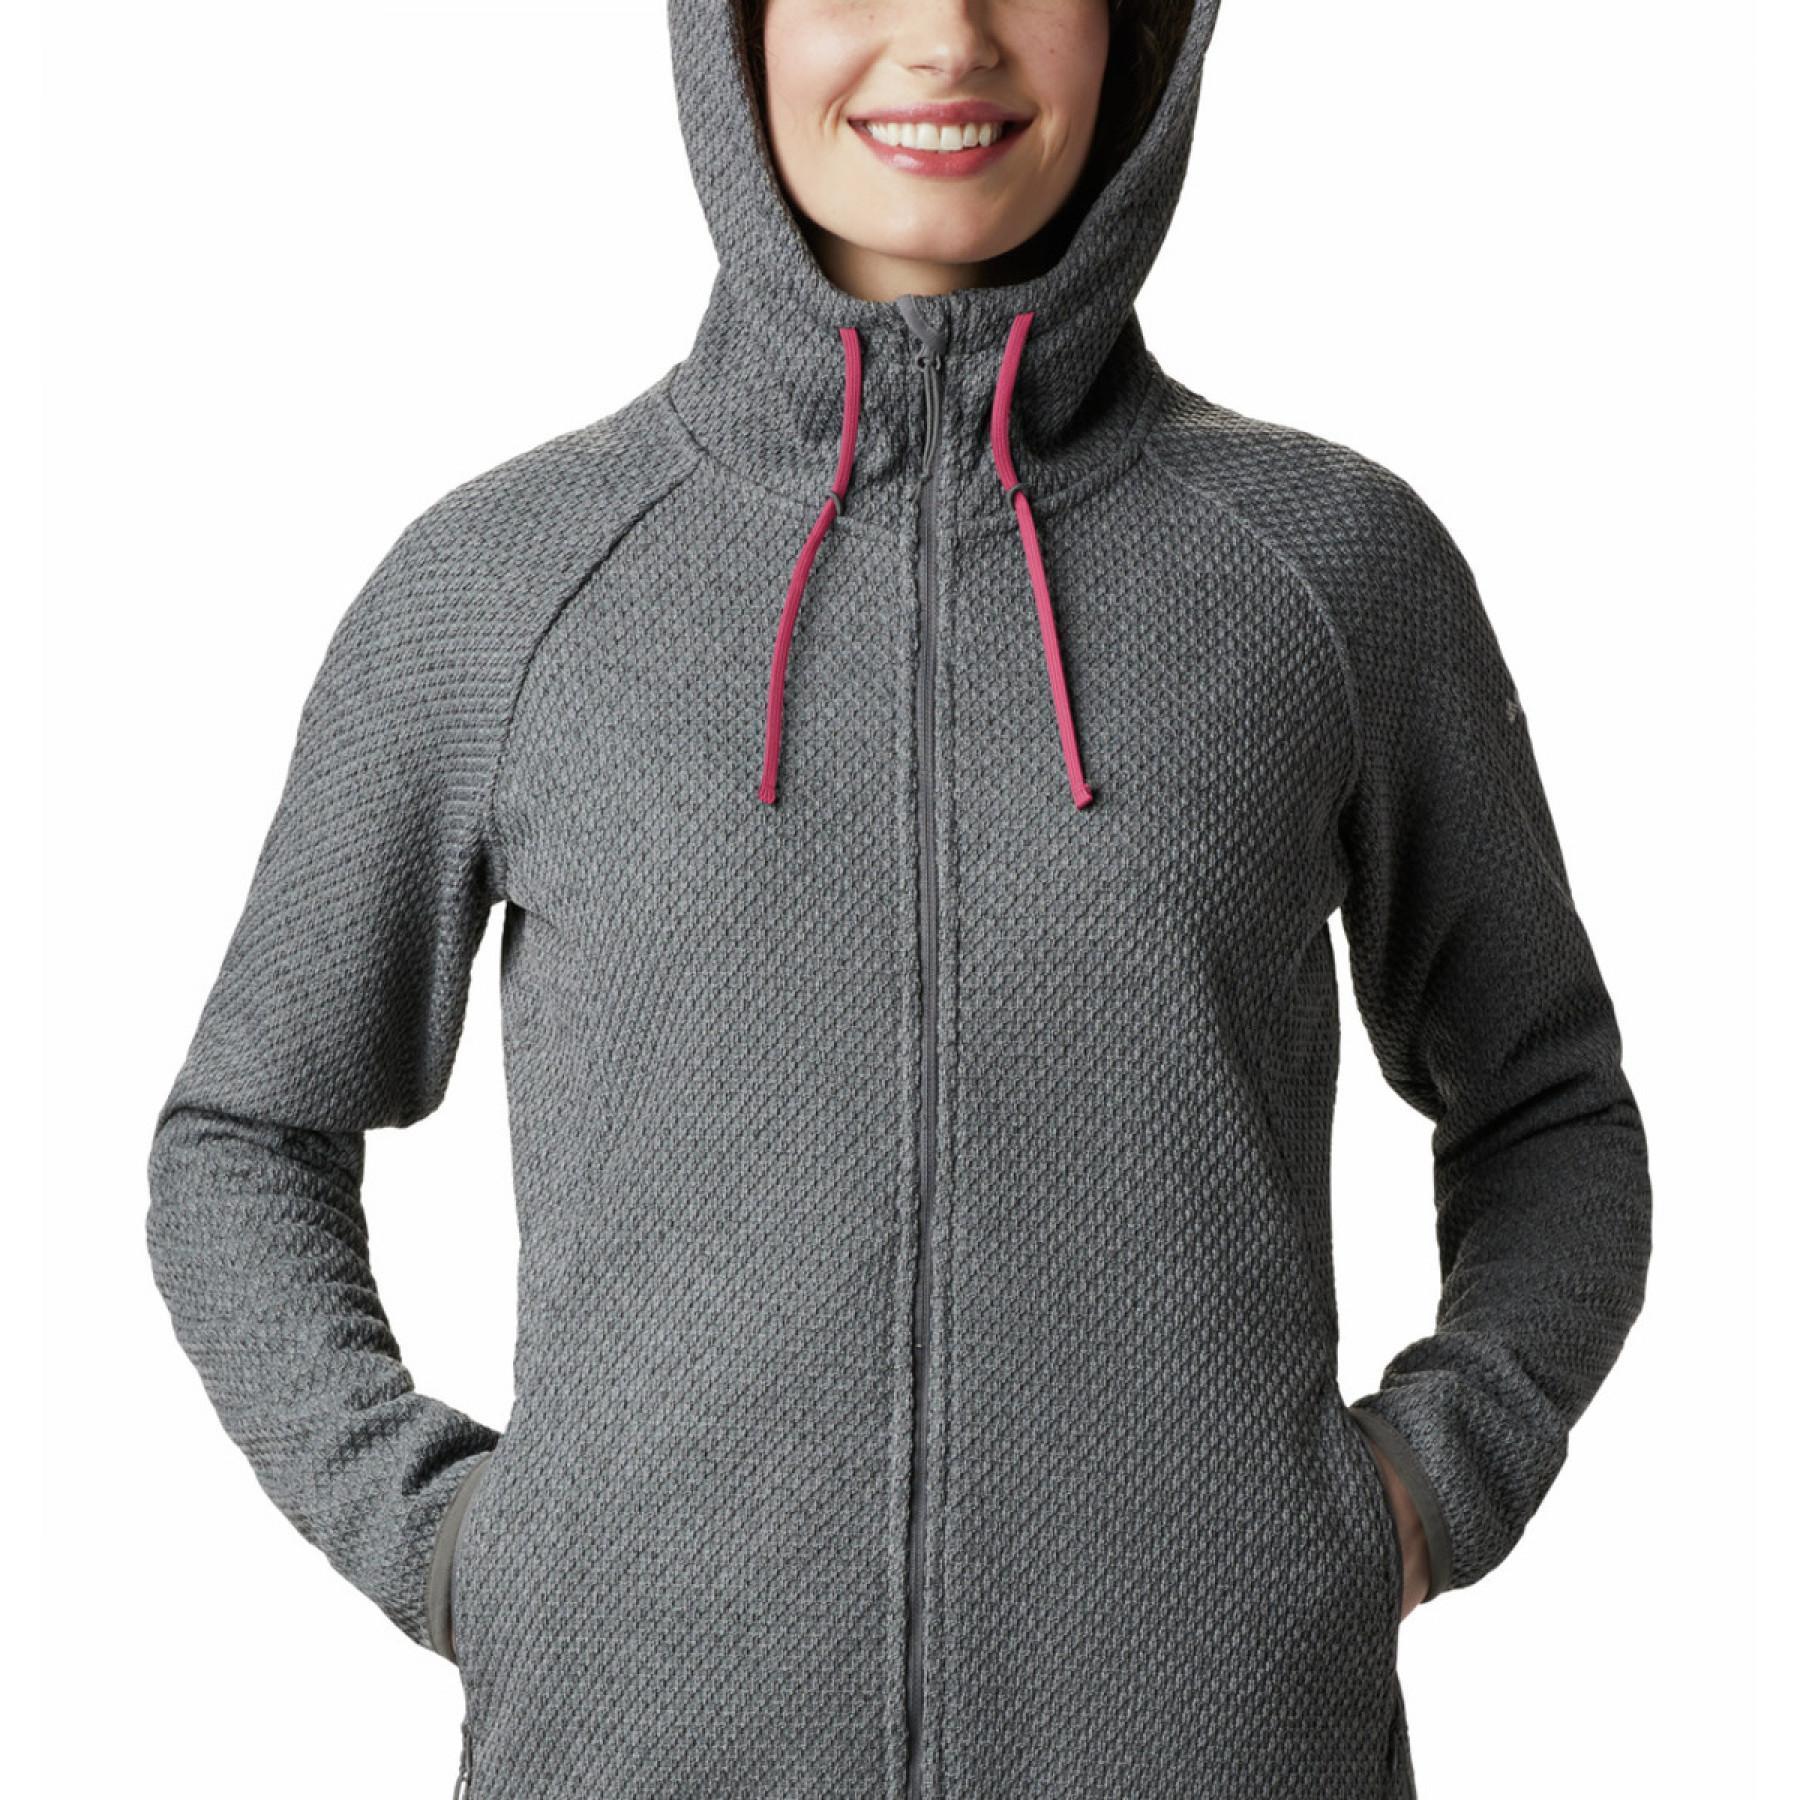 Women's zip-up hoodie Columbia Pacific Point